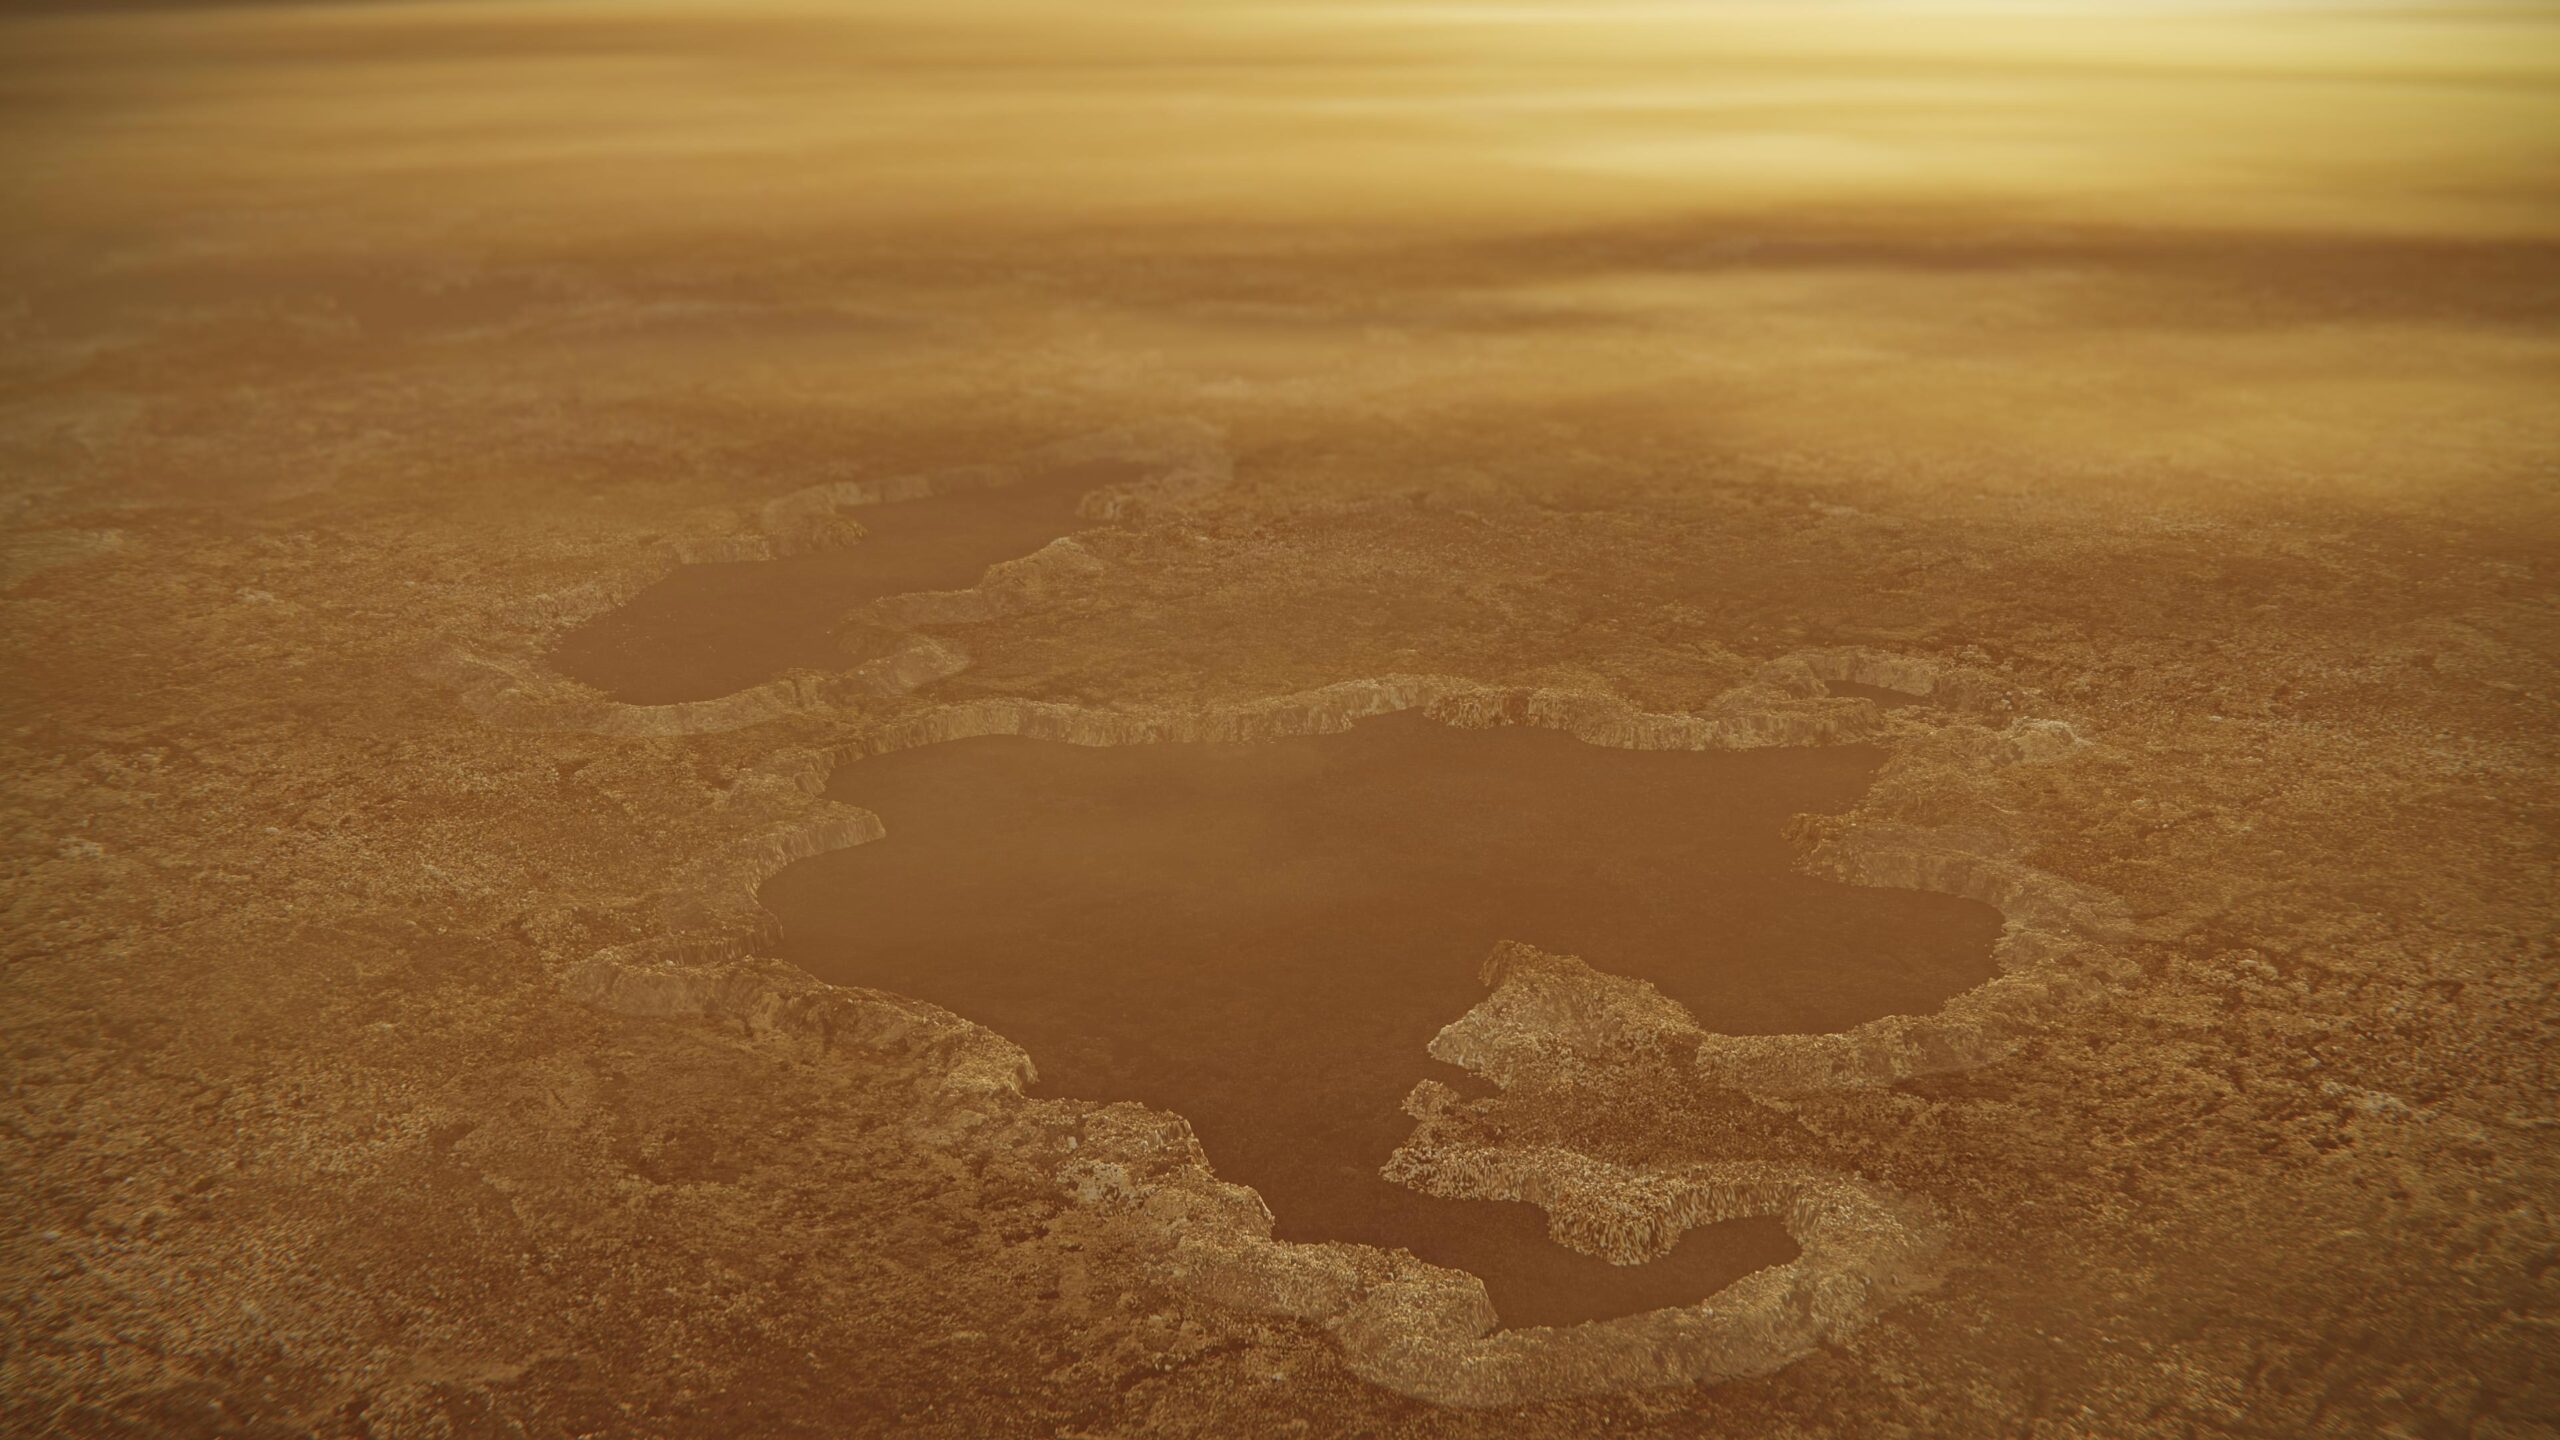 Titan Saturn’s Largest Moon